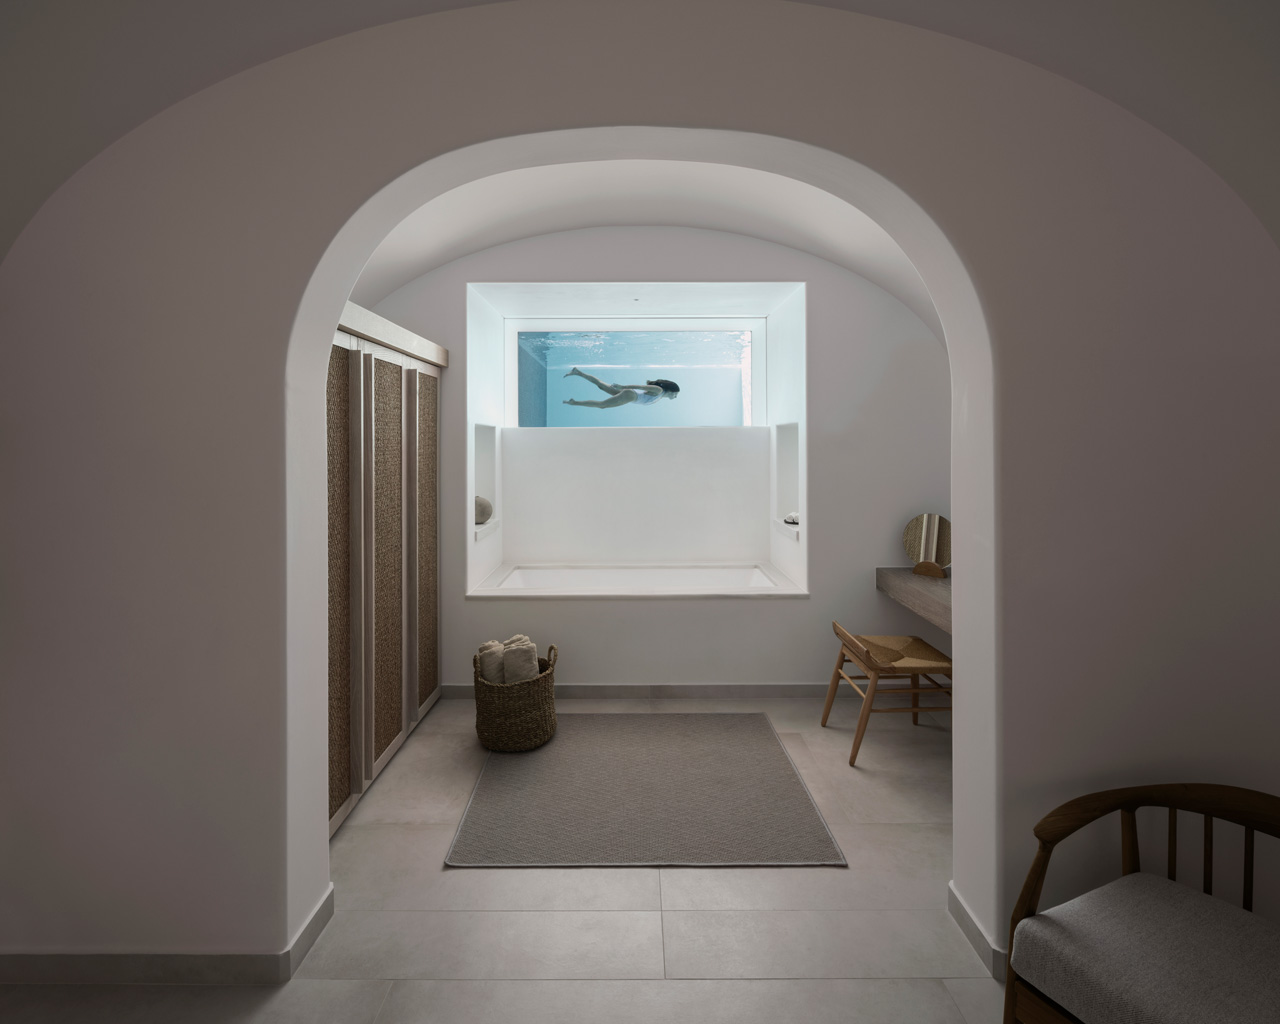 Santorini, Greece Vacations Luxury 2 Bedrooms Villa, Canaves Oia Epitome, Casol